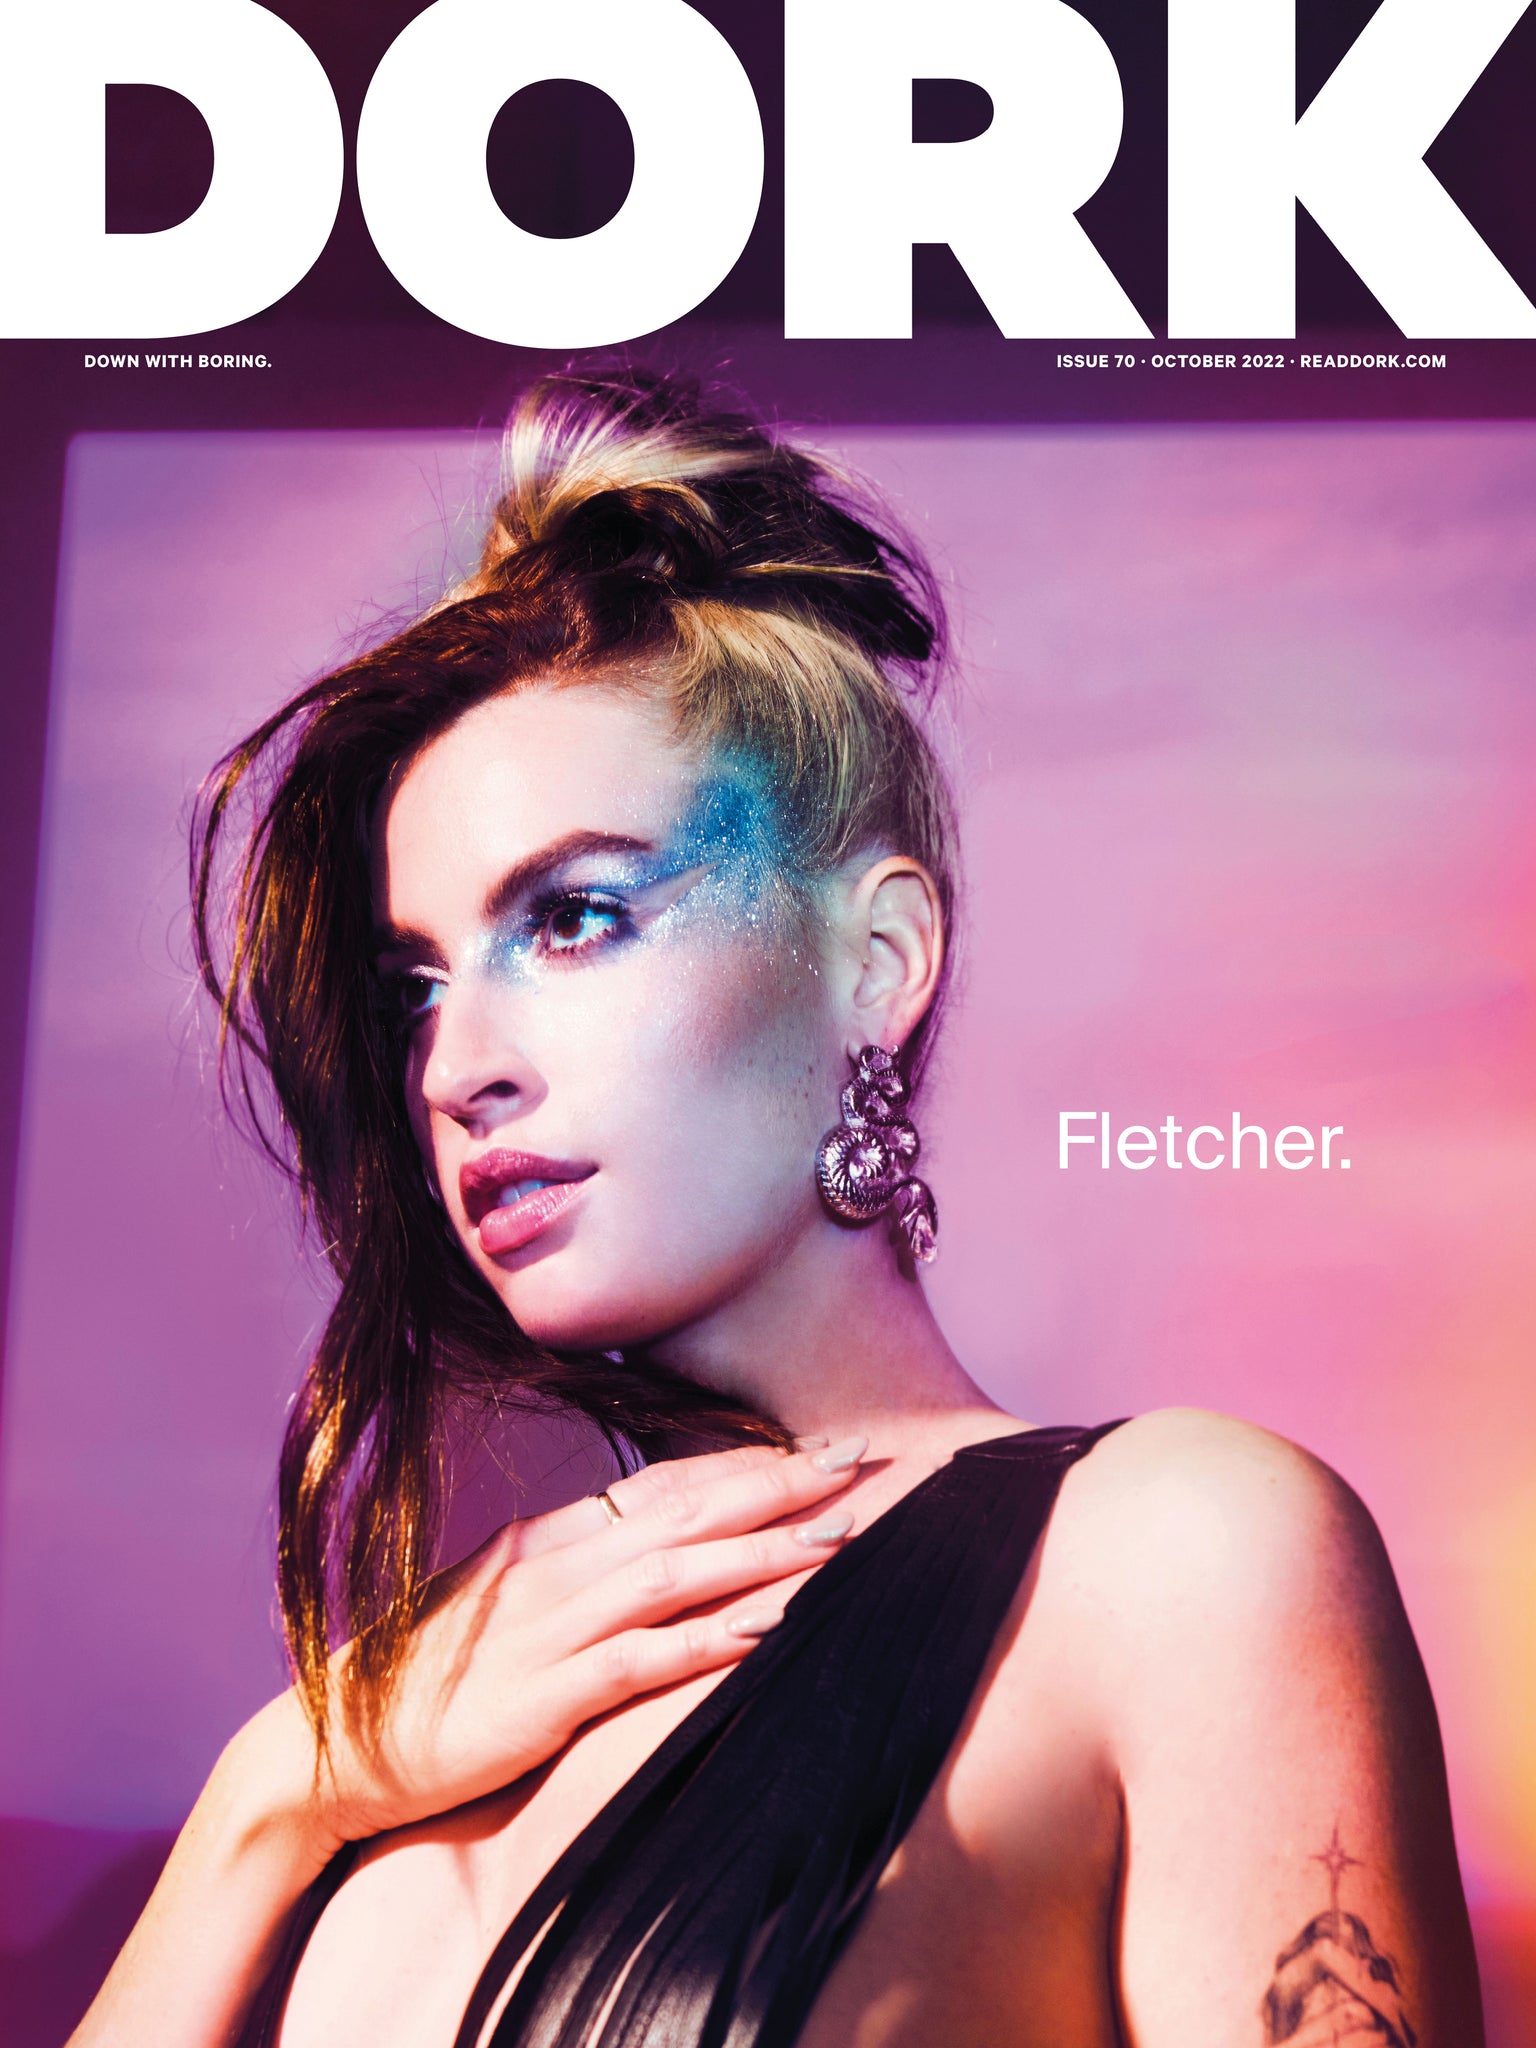 Dork, October 2022 (Easy Life cover) by Dork - Issuu